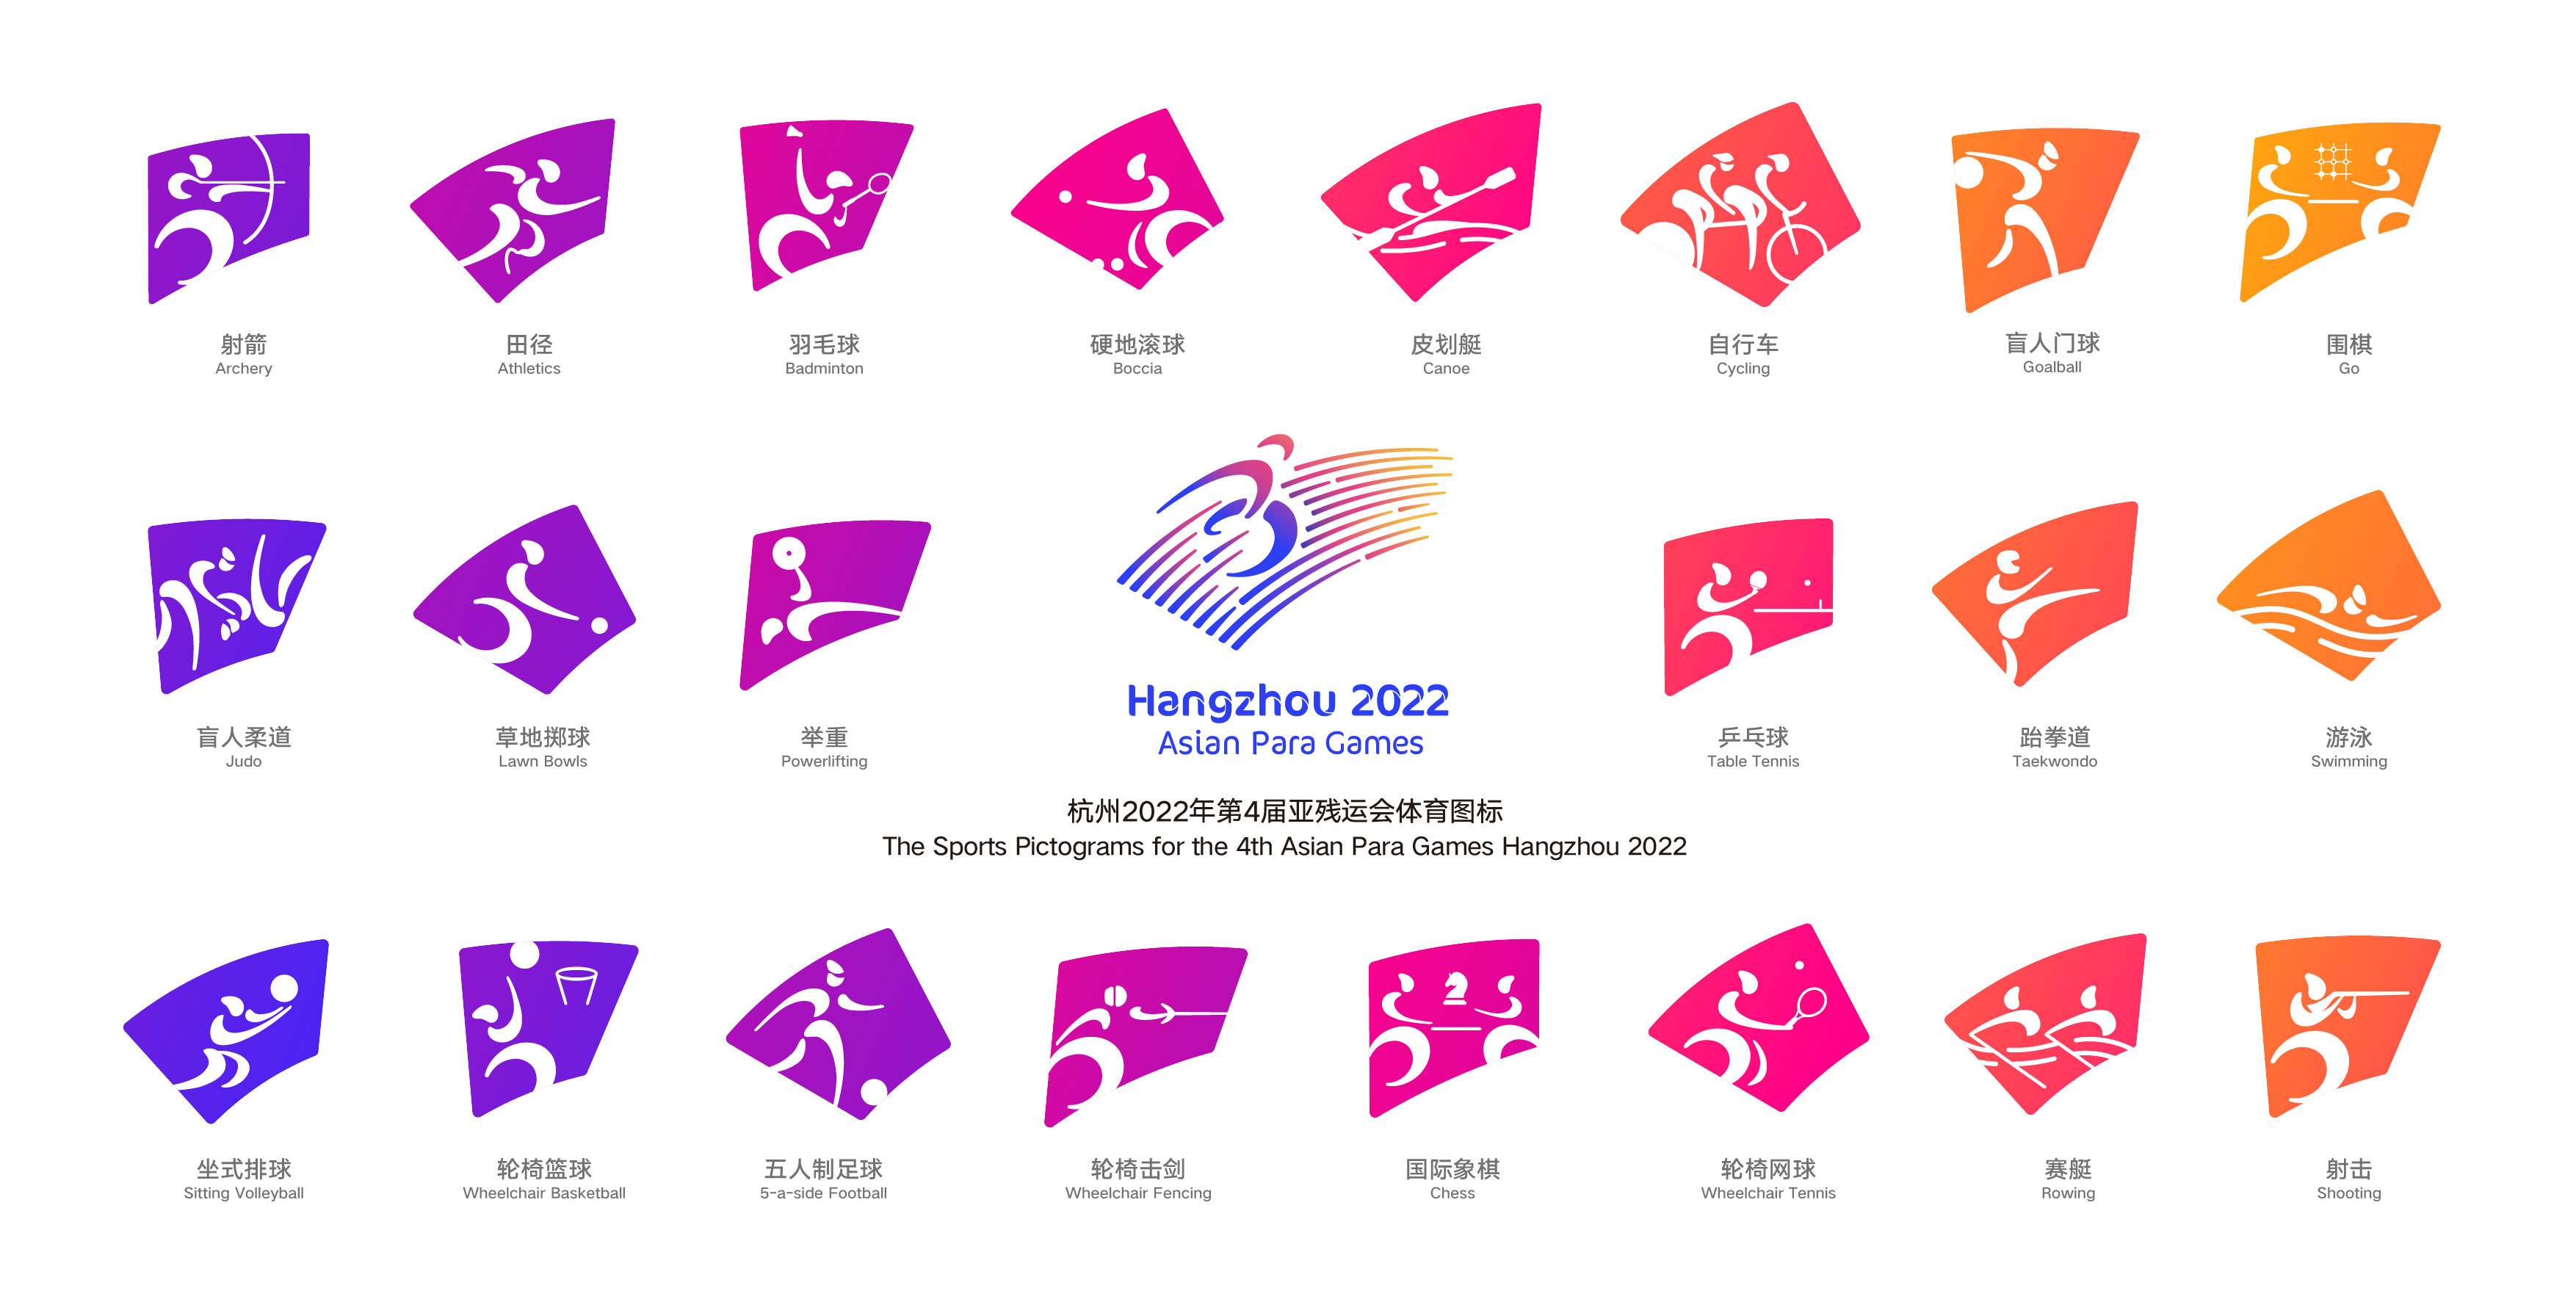 2022年杭州亚残运会体育图标发布，设计灵感源自钱江潮